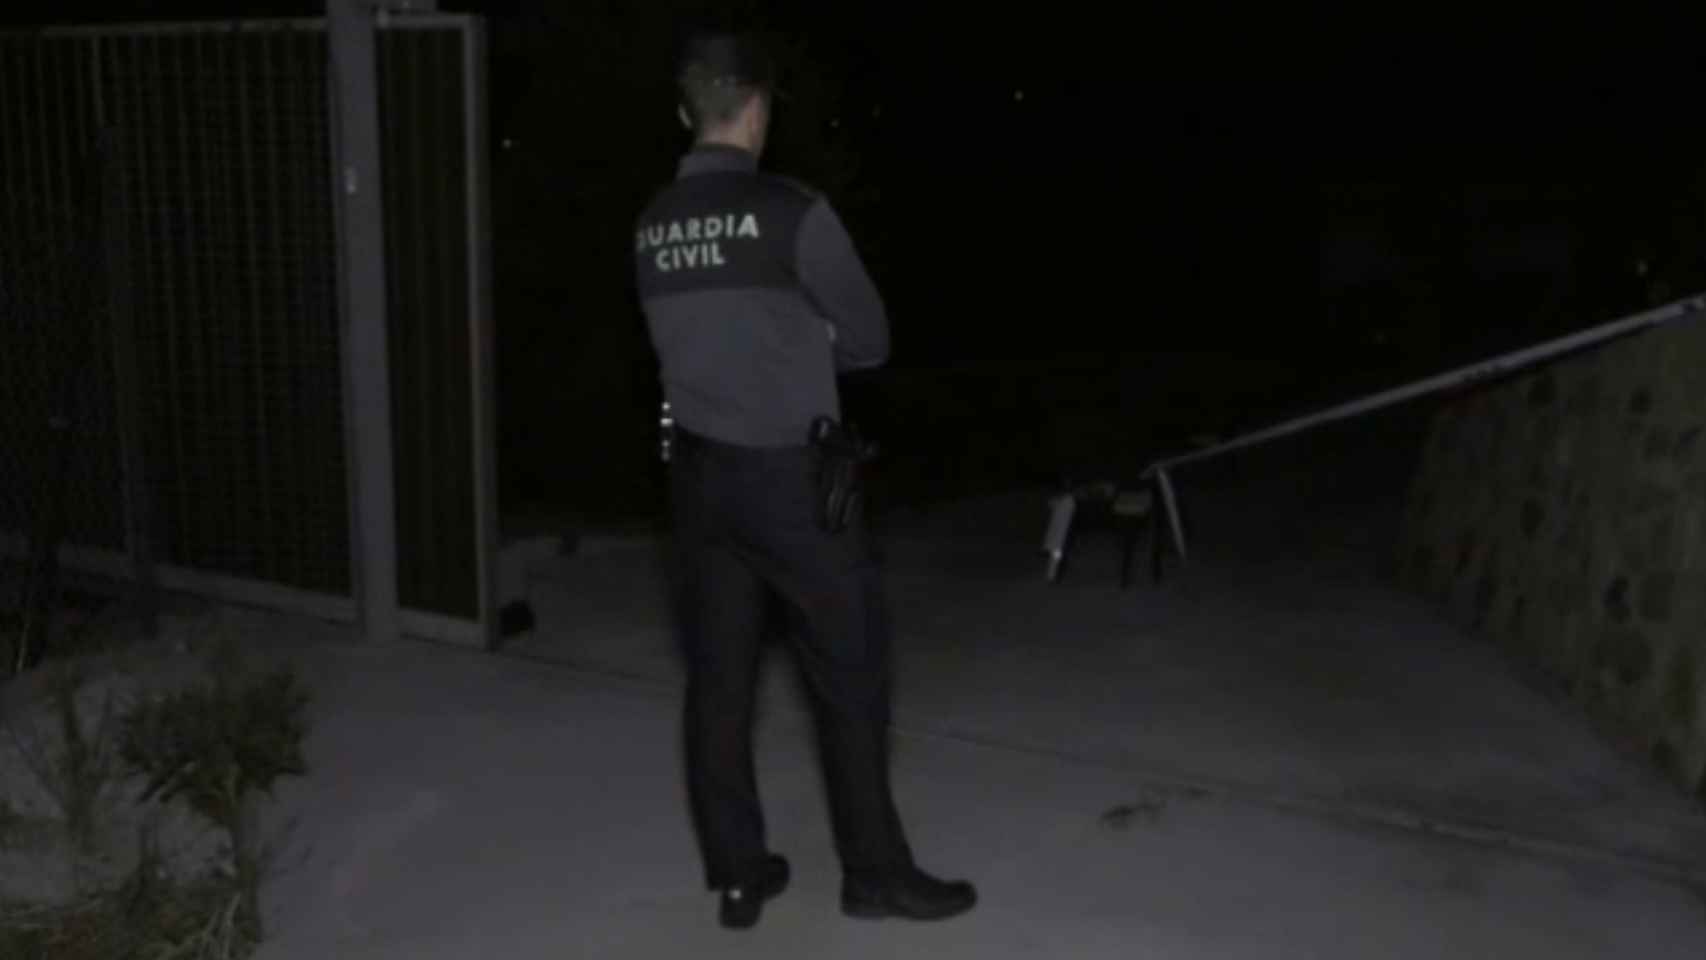 La Guardia Civil busca el coche de la víctima y ya ha registrado su vivienda en busca de pruebas.